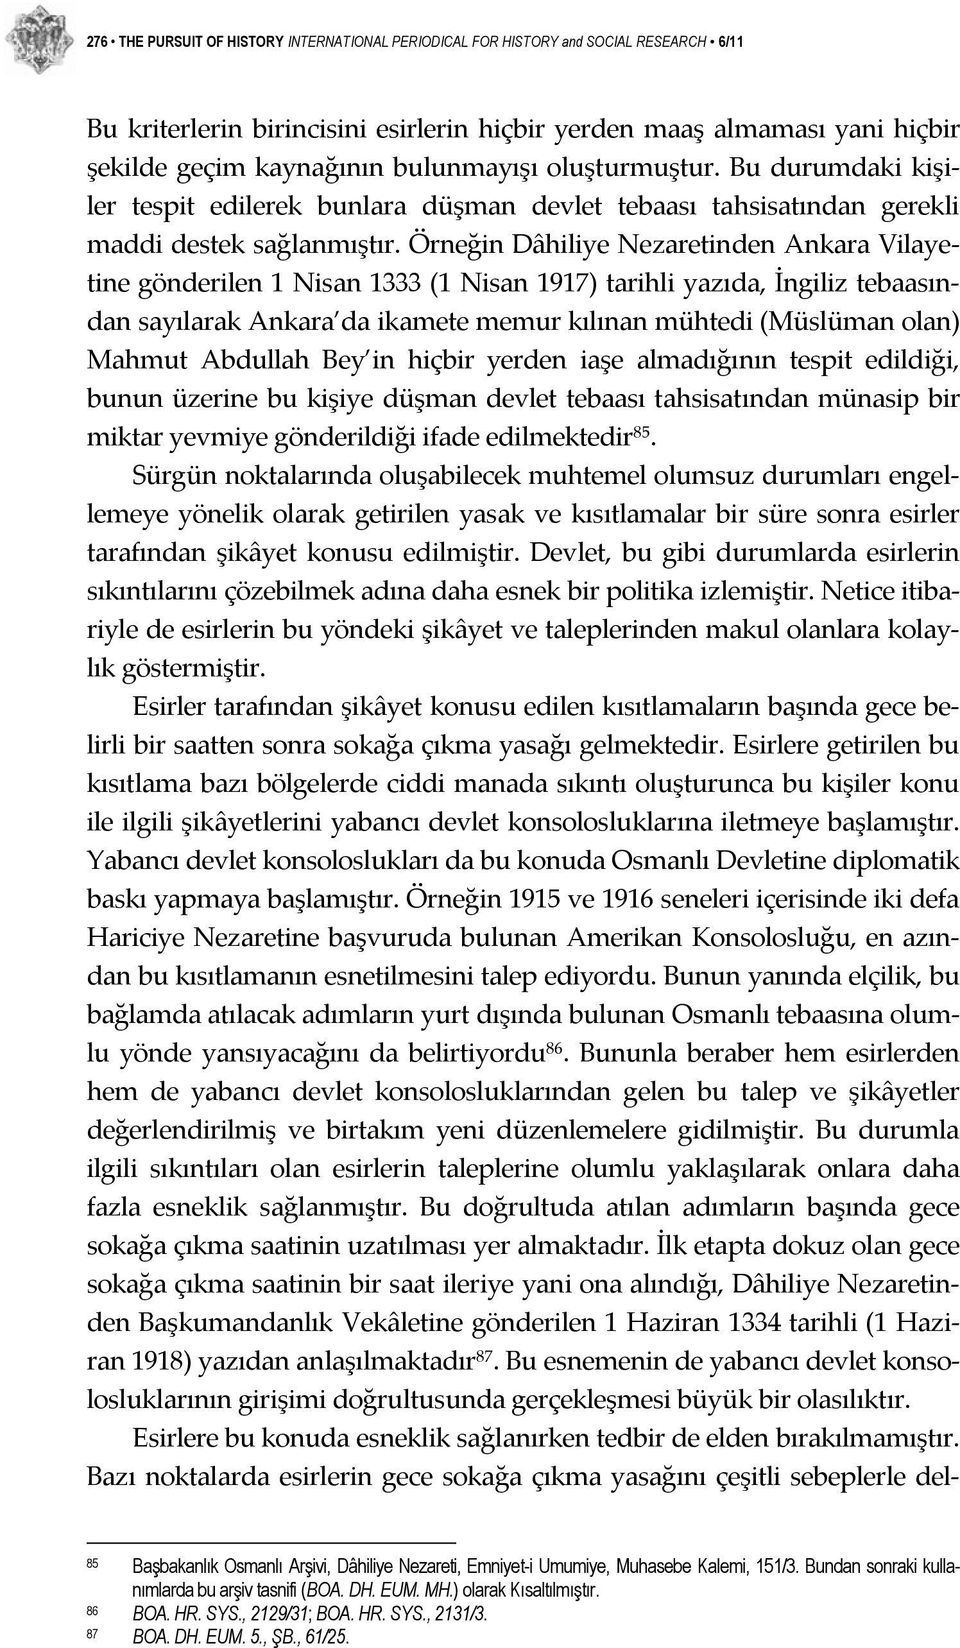 Örneğin Dâhiliye Nezaretinden Ankara Vilayetine gönderilen 1 Nisan 1333 (1 Nisan 1917) tarihli yazıda, İngiliz tebaasından sayılarak Ankara da ikamete memur kılınan mühtedi (Müslüman olan) Mahmut